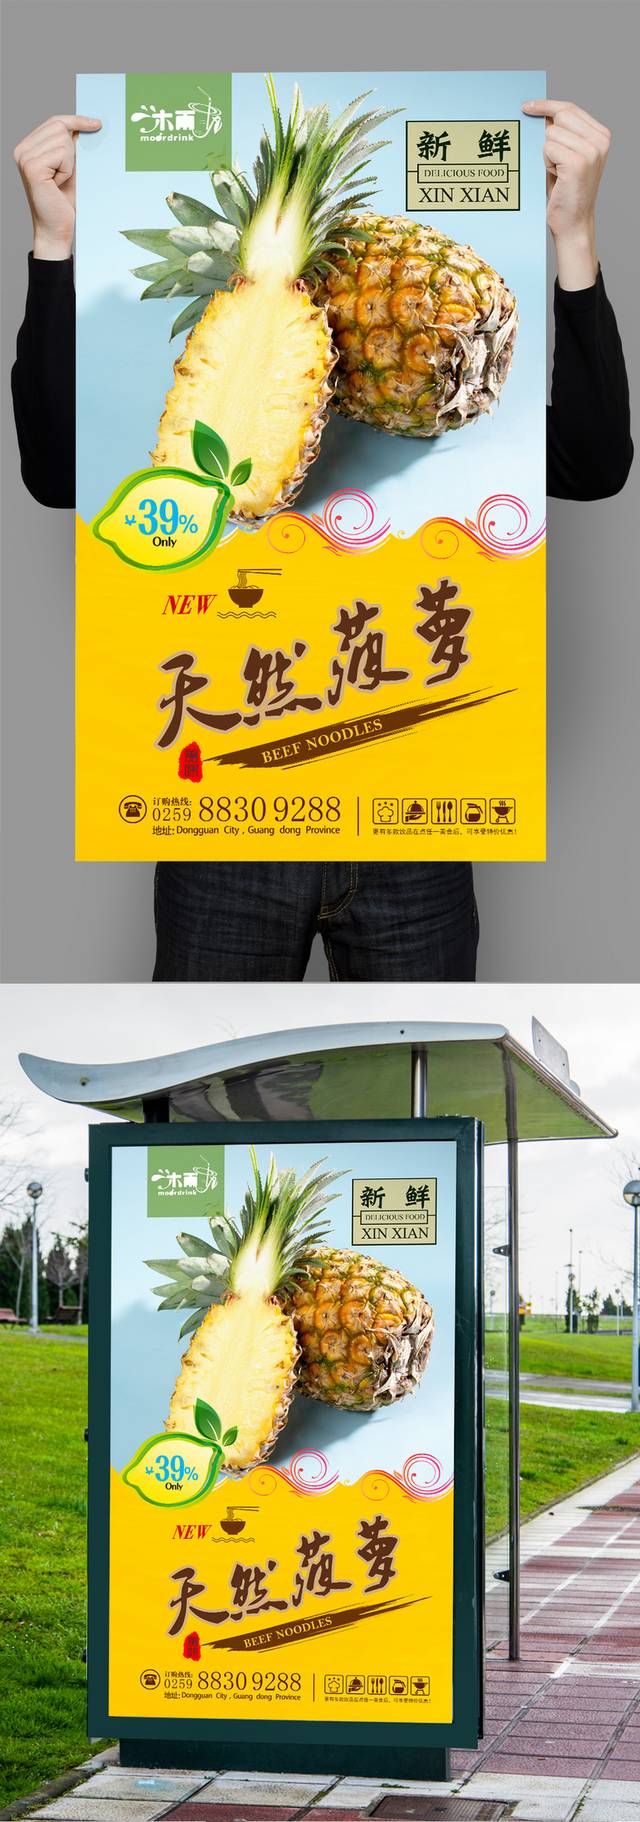 通用菠萝宣传海报设计